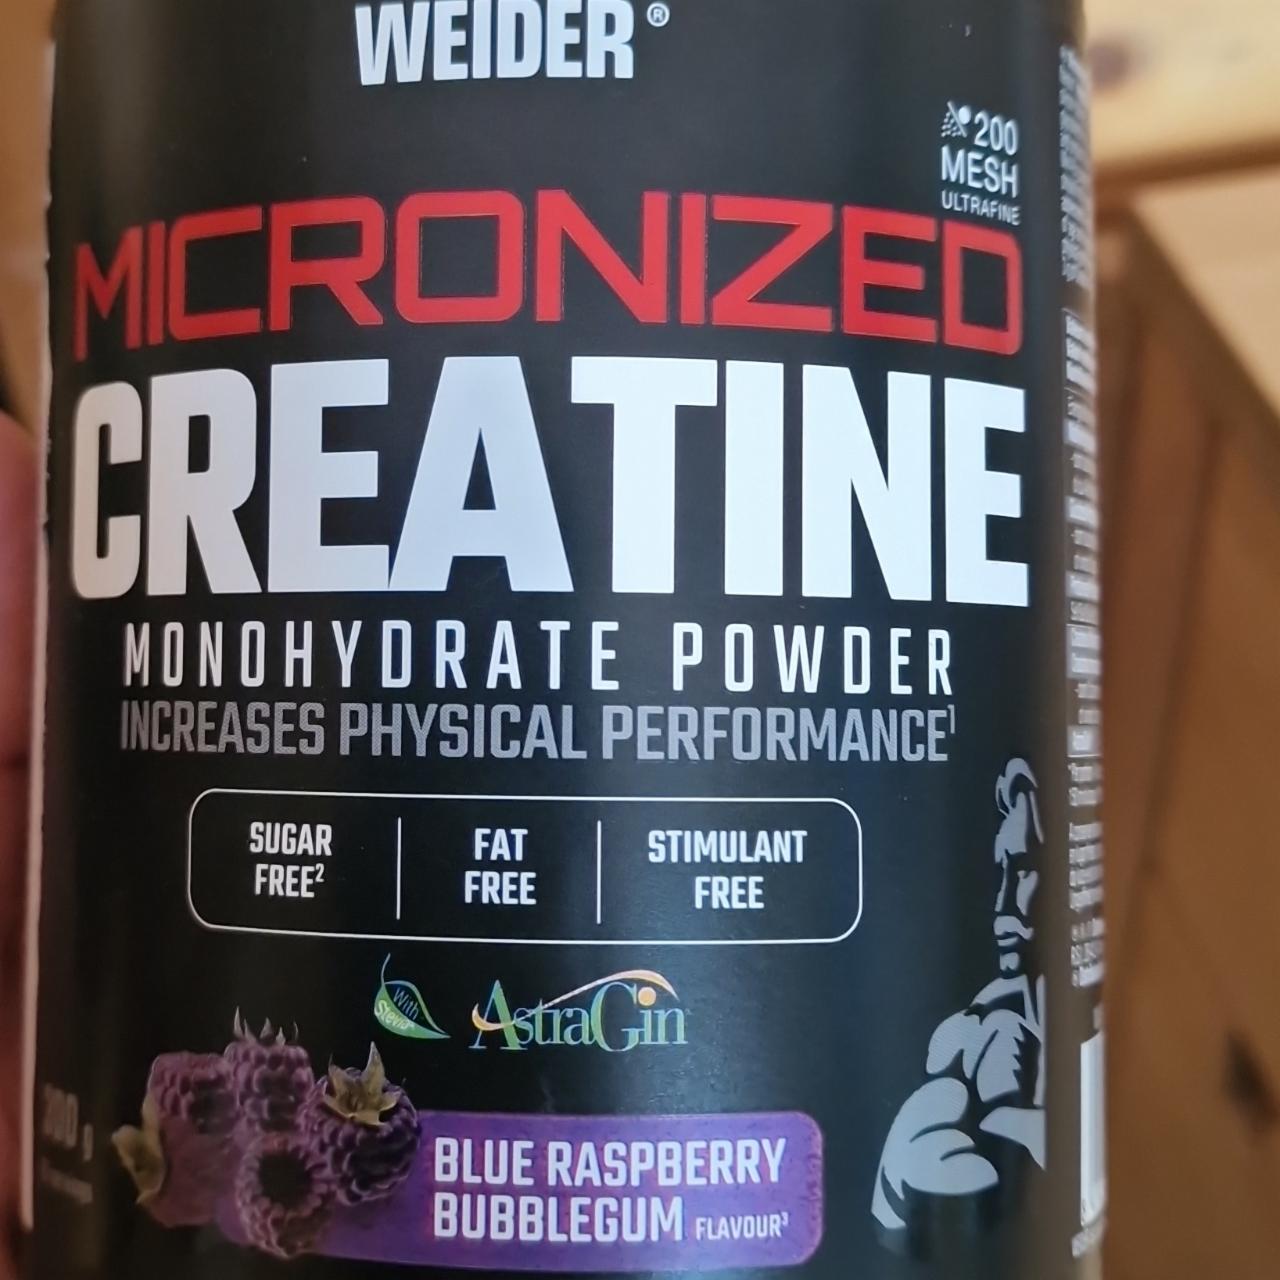 Fotografie - Micronized Creatine Monohydrate Powder Blue Raspberry Bubblegum Weider